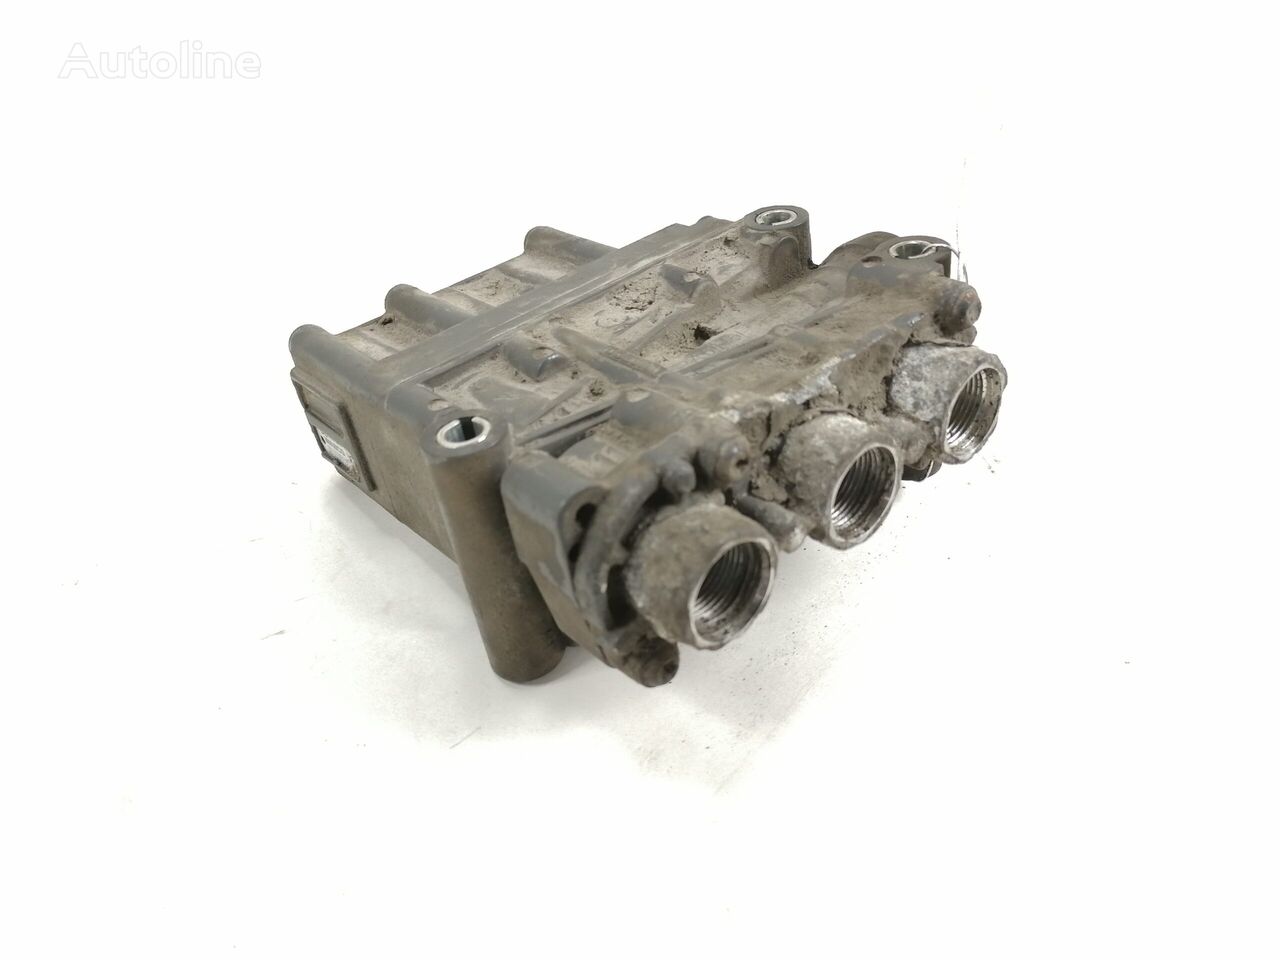 Mercedes-Benz Air suspension control valve, ECAS A0013271325 pneumatic valve for Mercedes-Benz Actros truck tractor